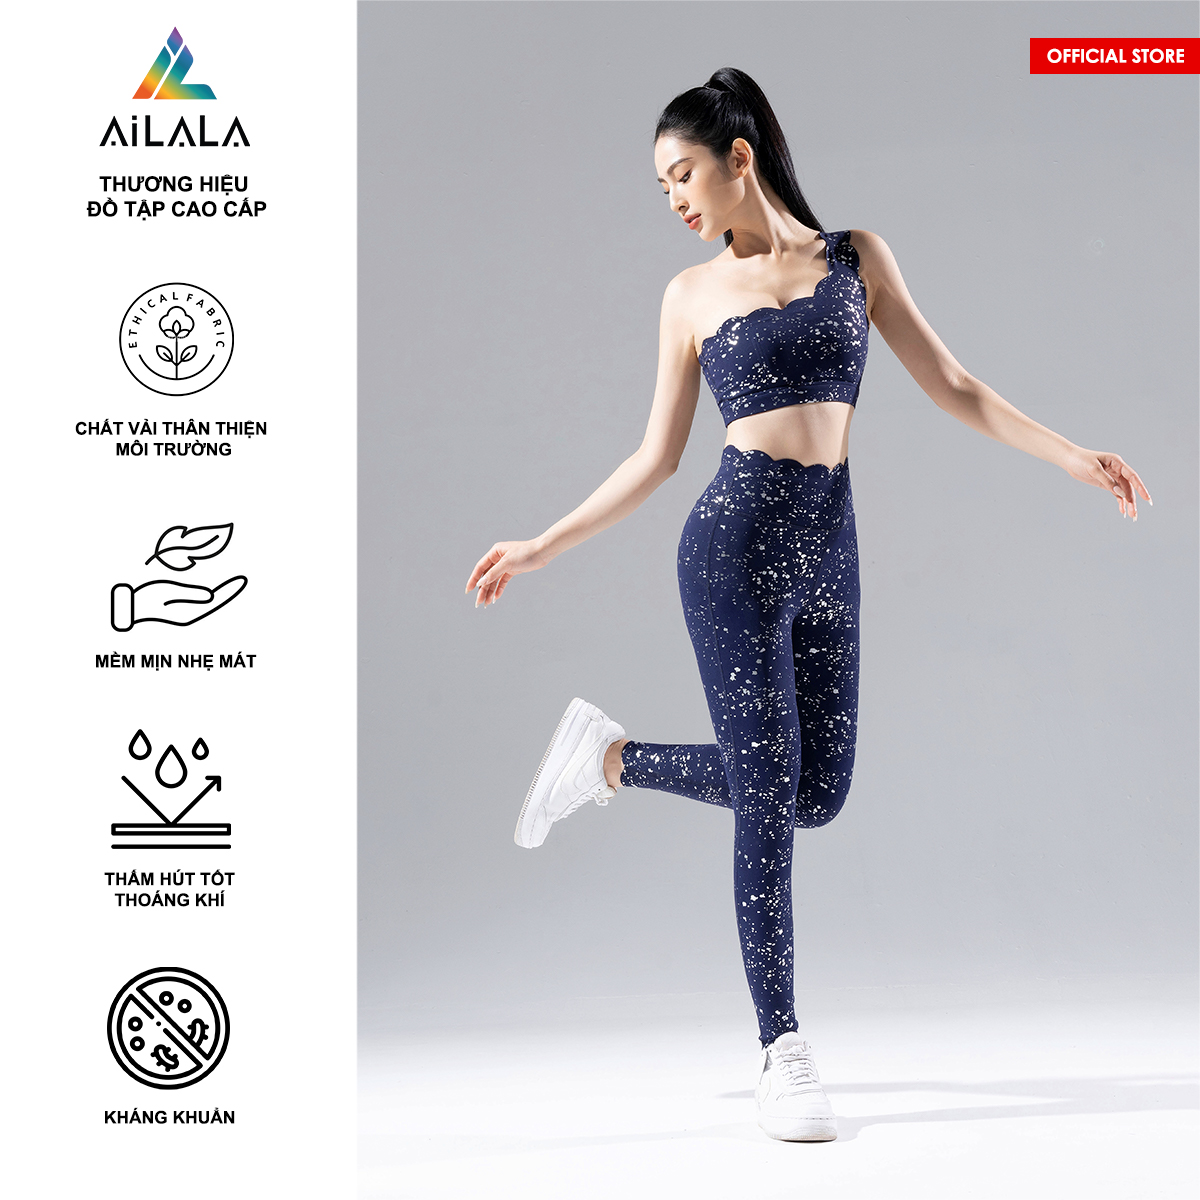 Bộ quần áo thể thao nữ AiLALA LUX51, Đồ tập Yoga Gym Pilates, chất vải Hi-tech cao cấp